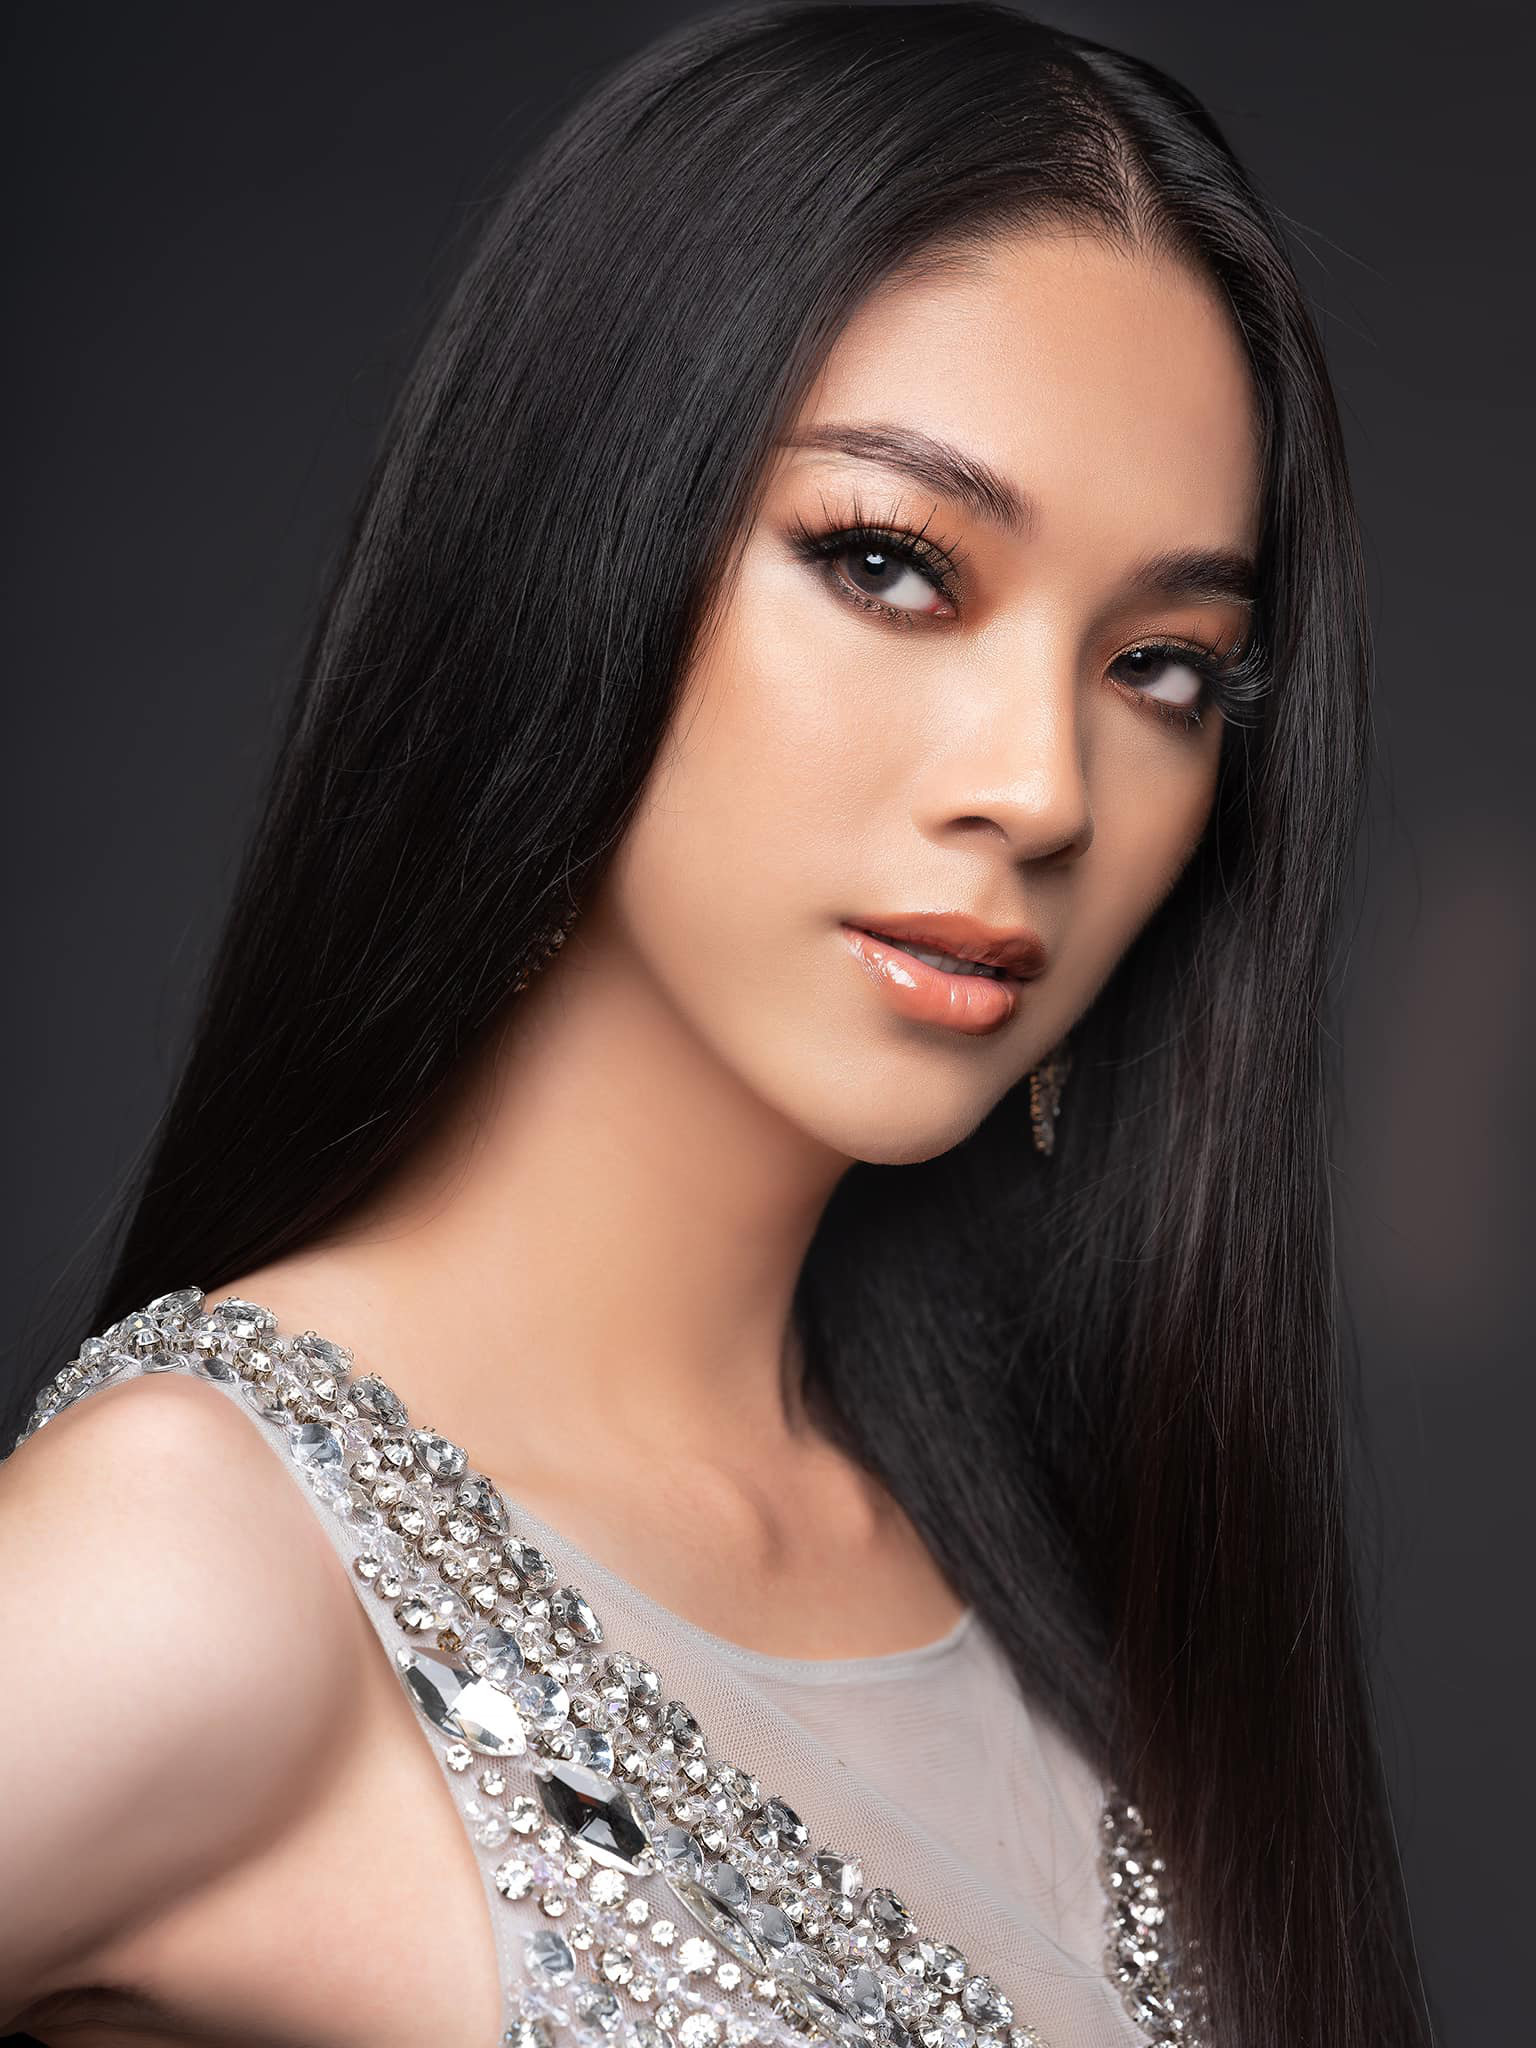 Mẫu Unisex nổi tiếng mạng xã hội chính thức bước vào cuộc đua Hoa hậu Chuyển giới Việt Nam 2020! - Ảnh 6.